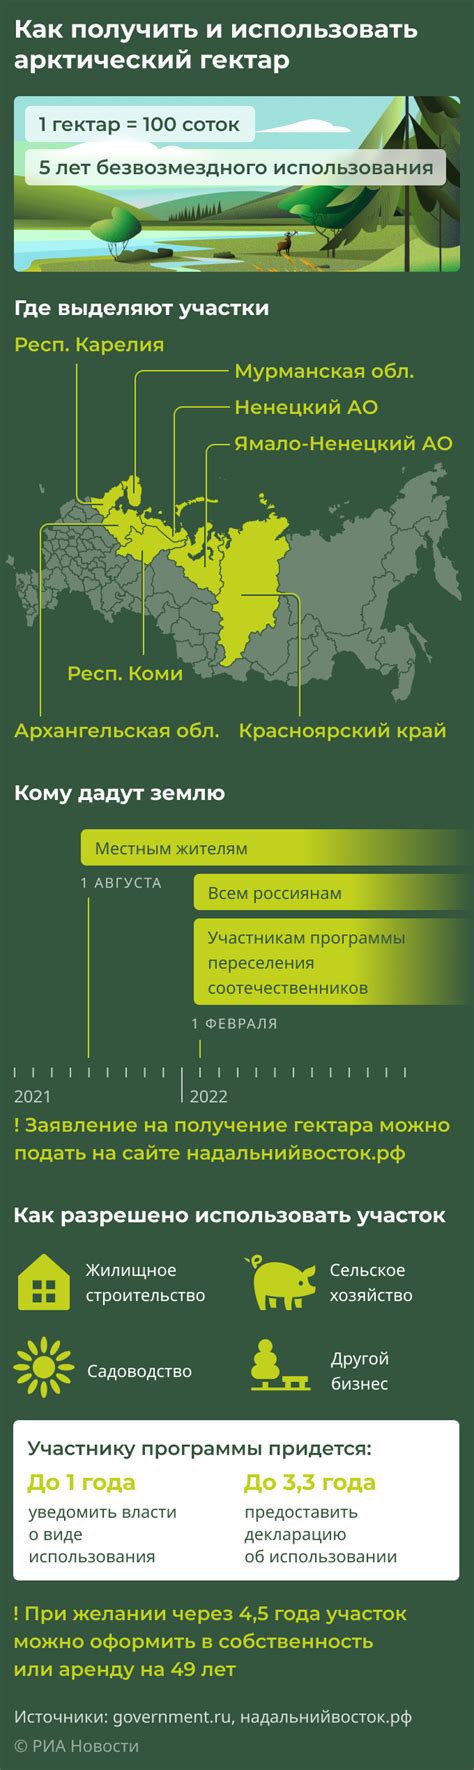 Как получить и использовать арктический гектар - РИА Новости, 02.08.2021